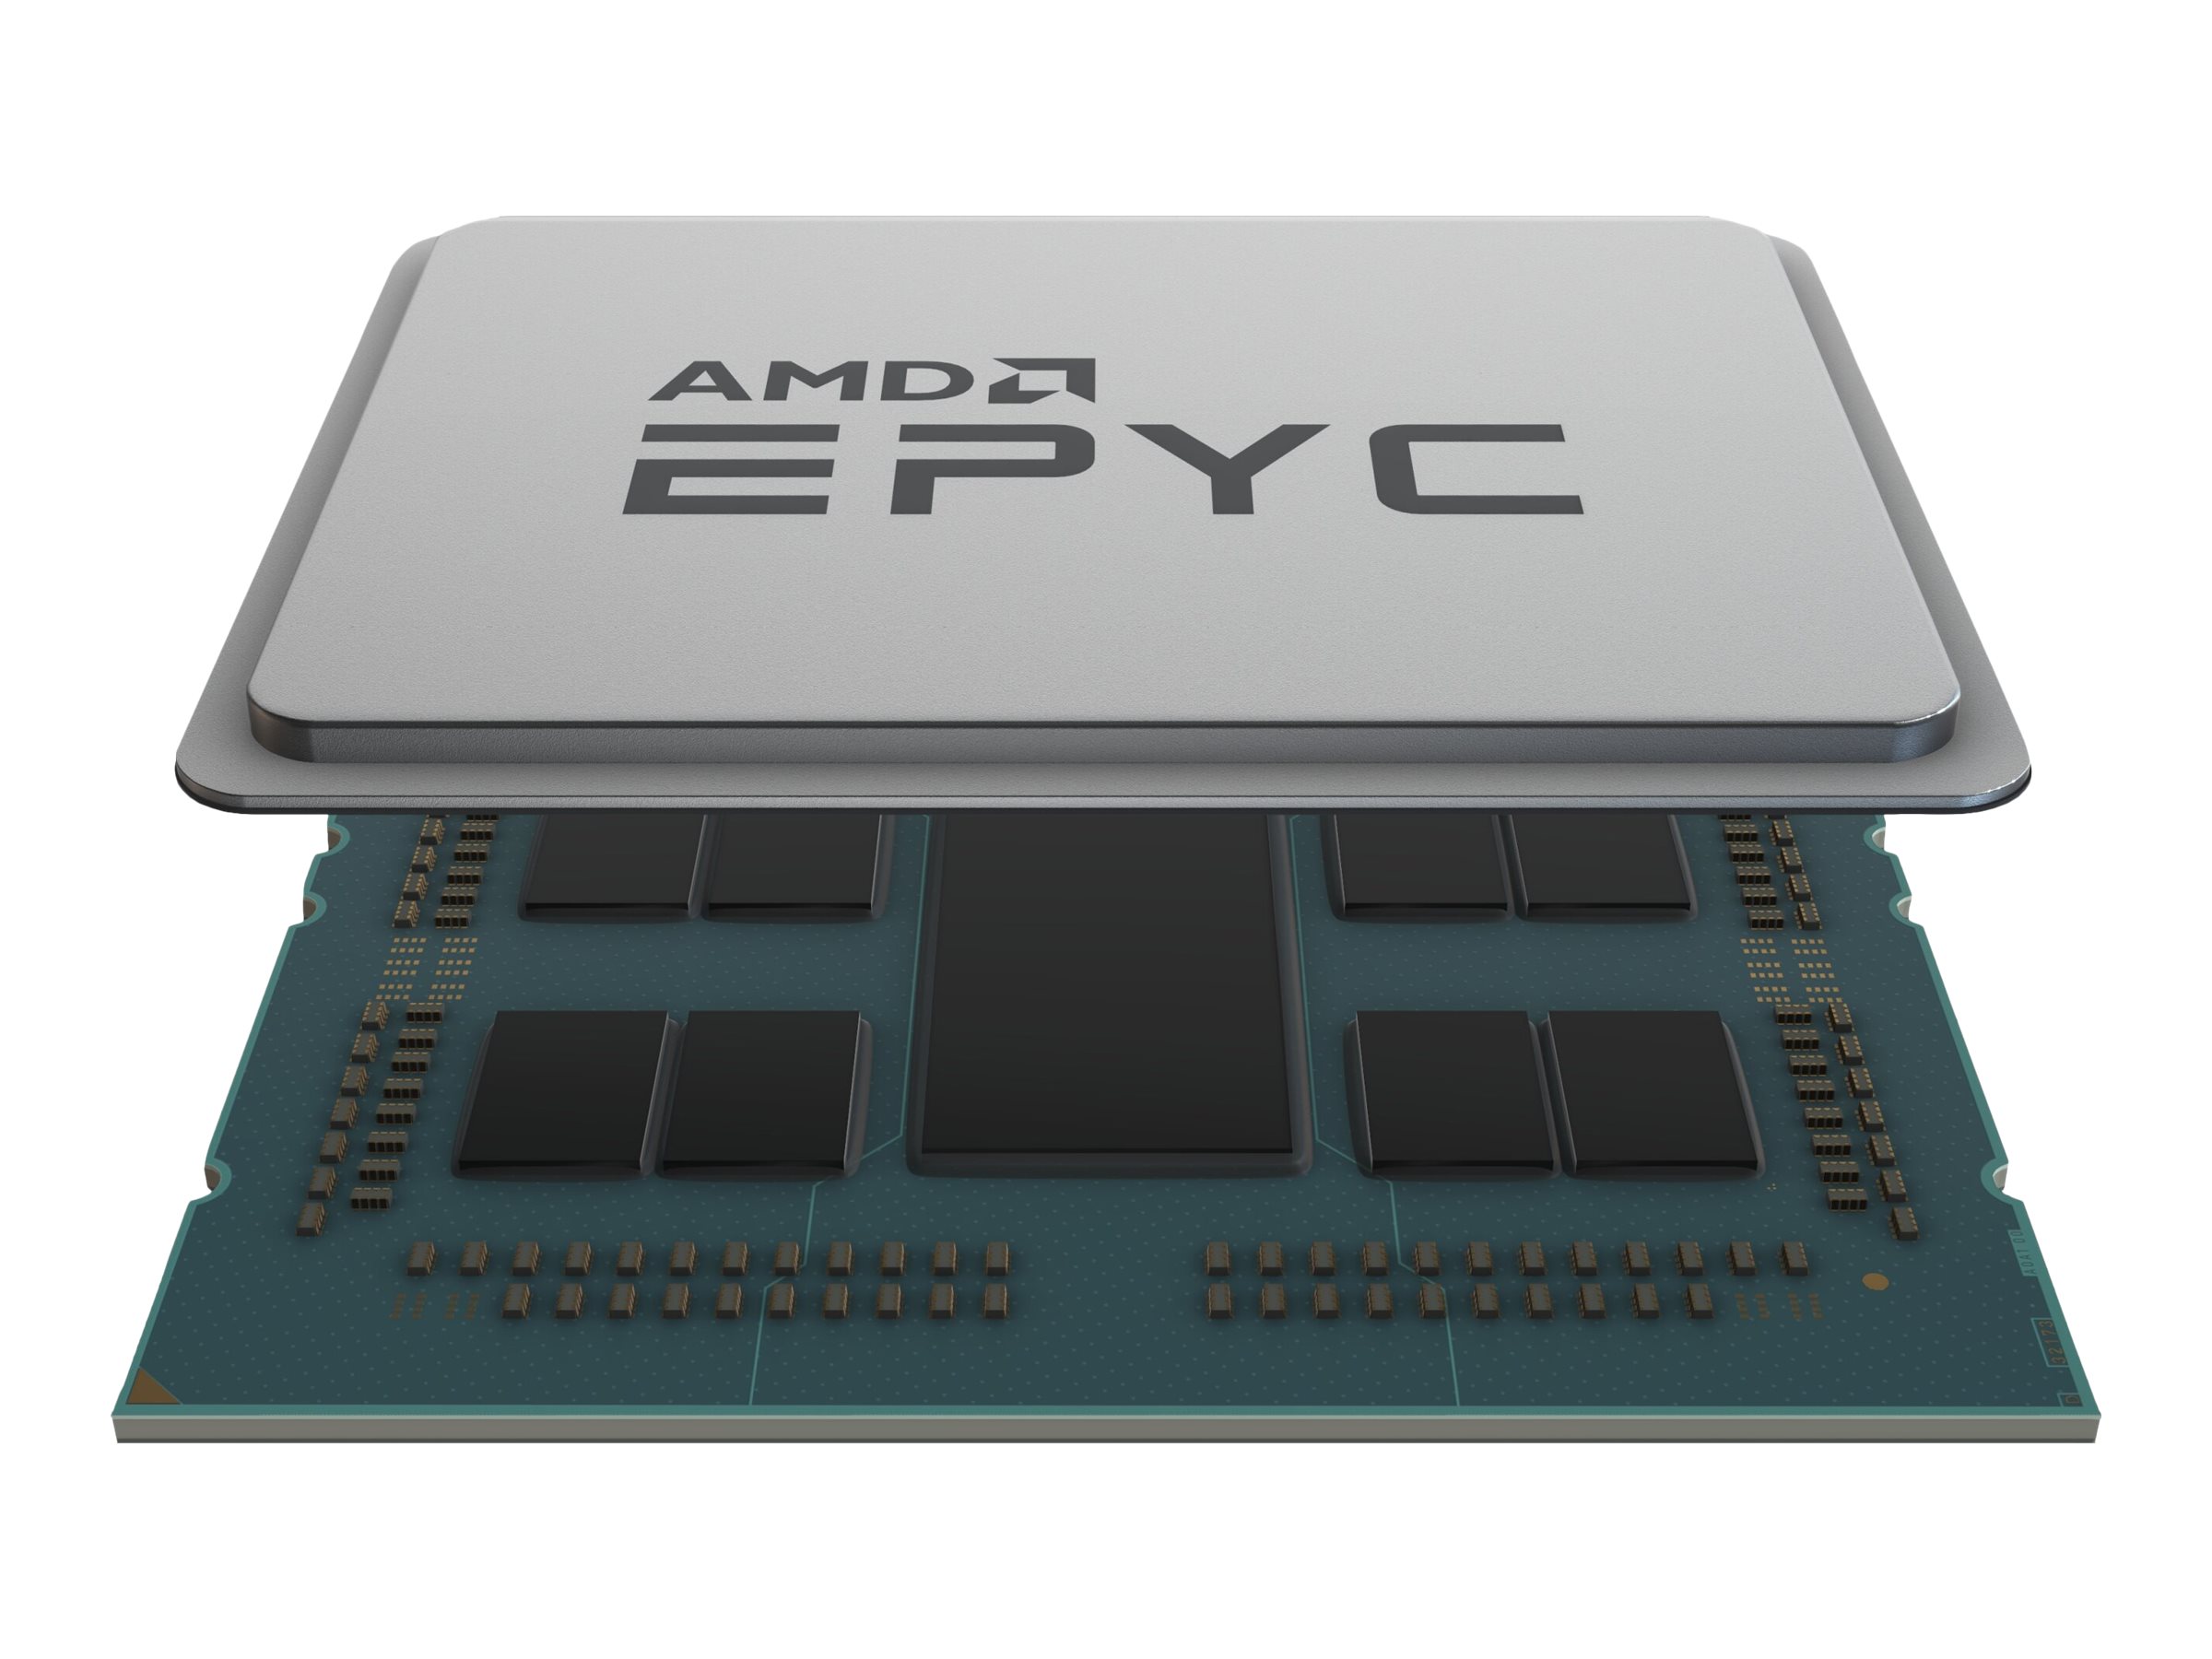 HPE AMD EPYC 7313 CPU FOR HPE (P38669-B21)